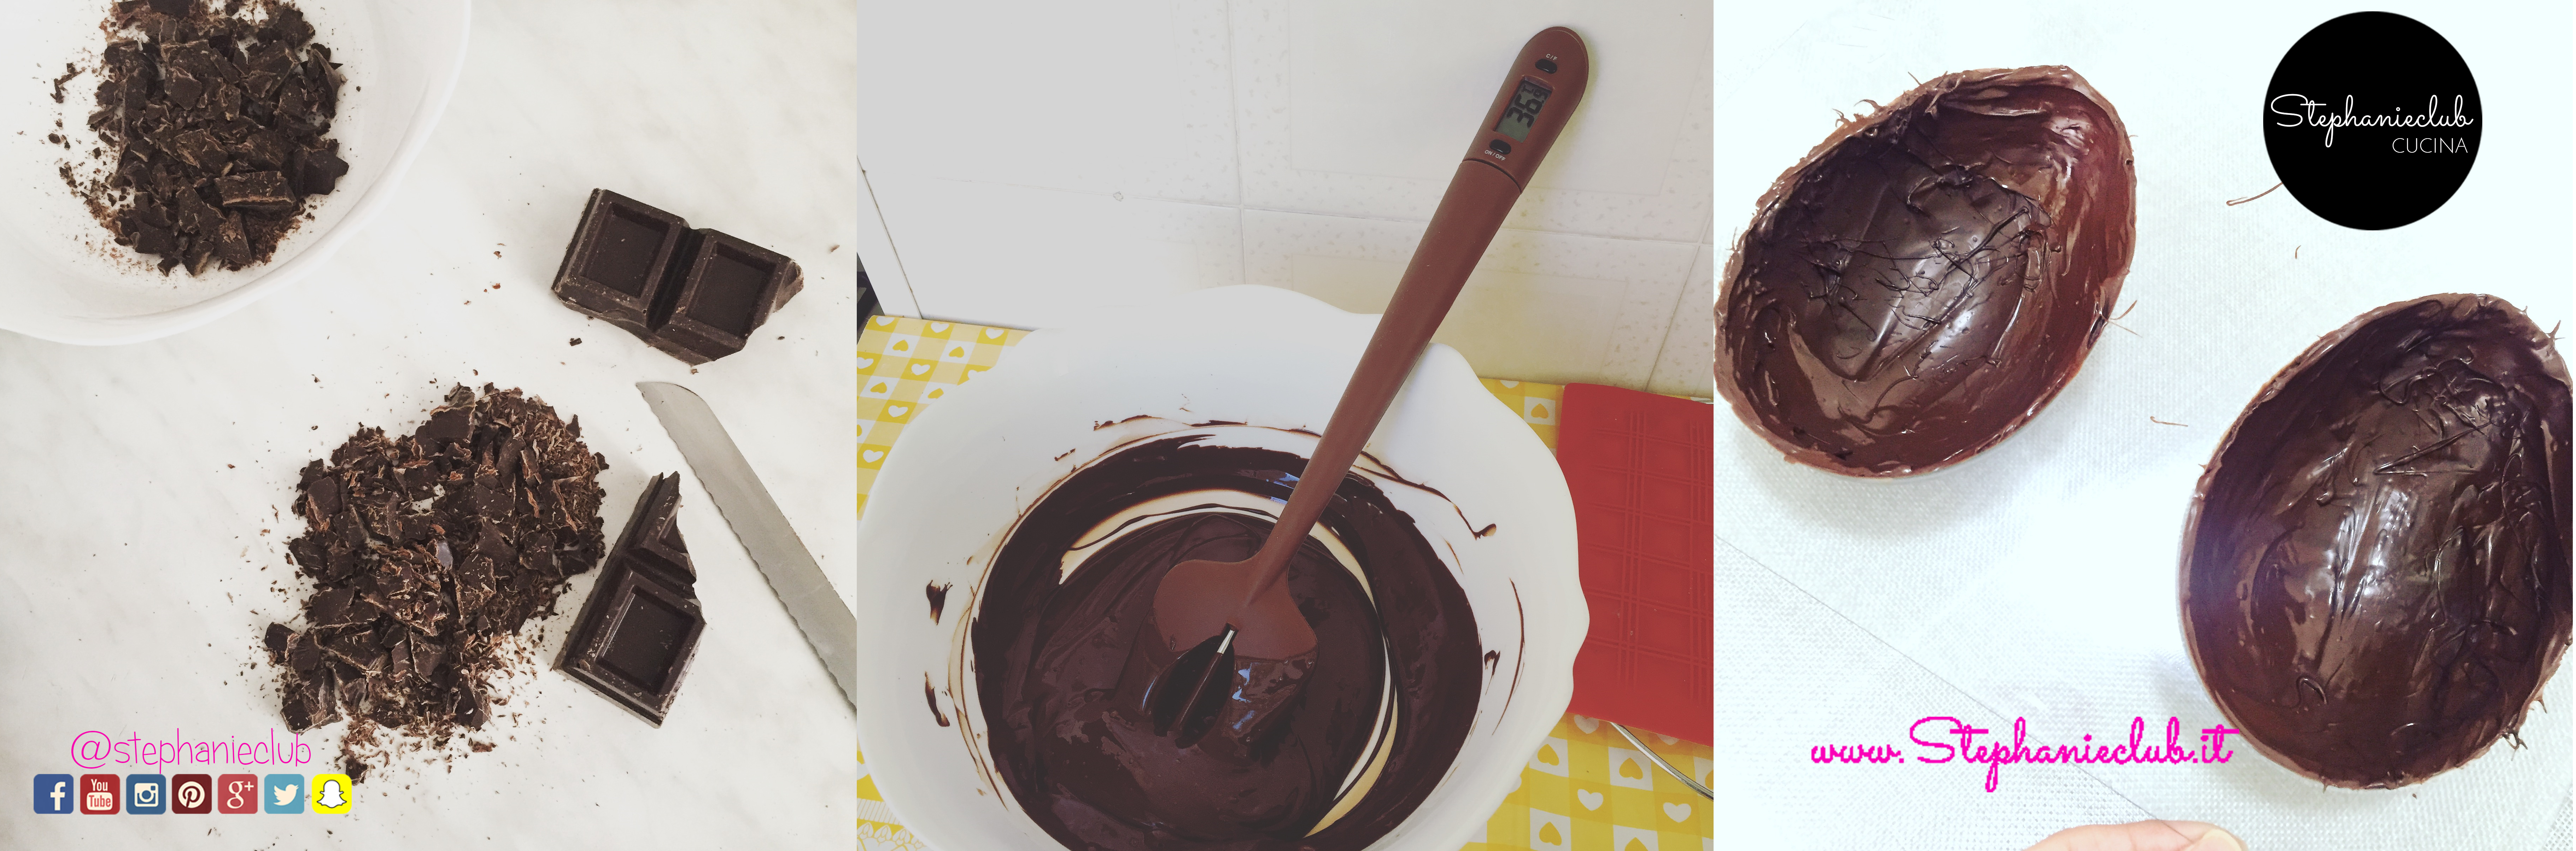 Come_preparare_un_uovo_di_cioccolata_homemade_02